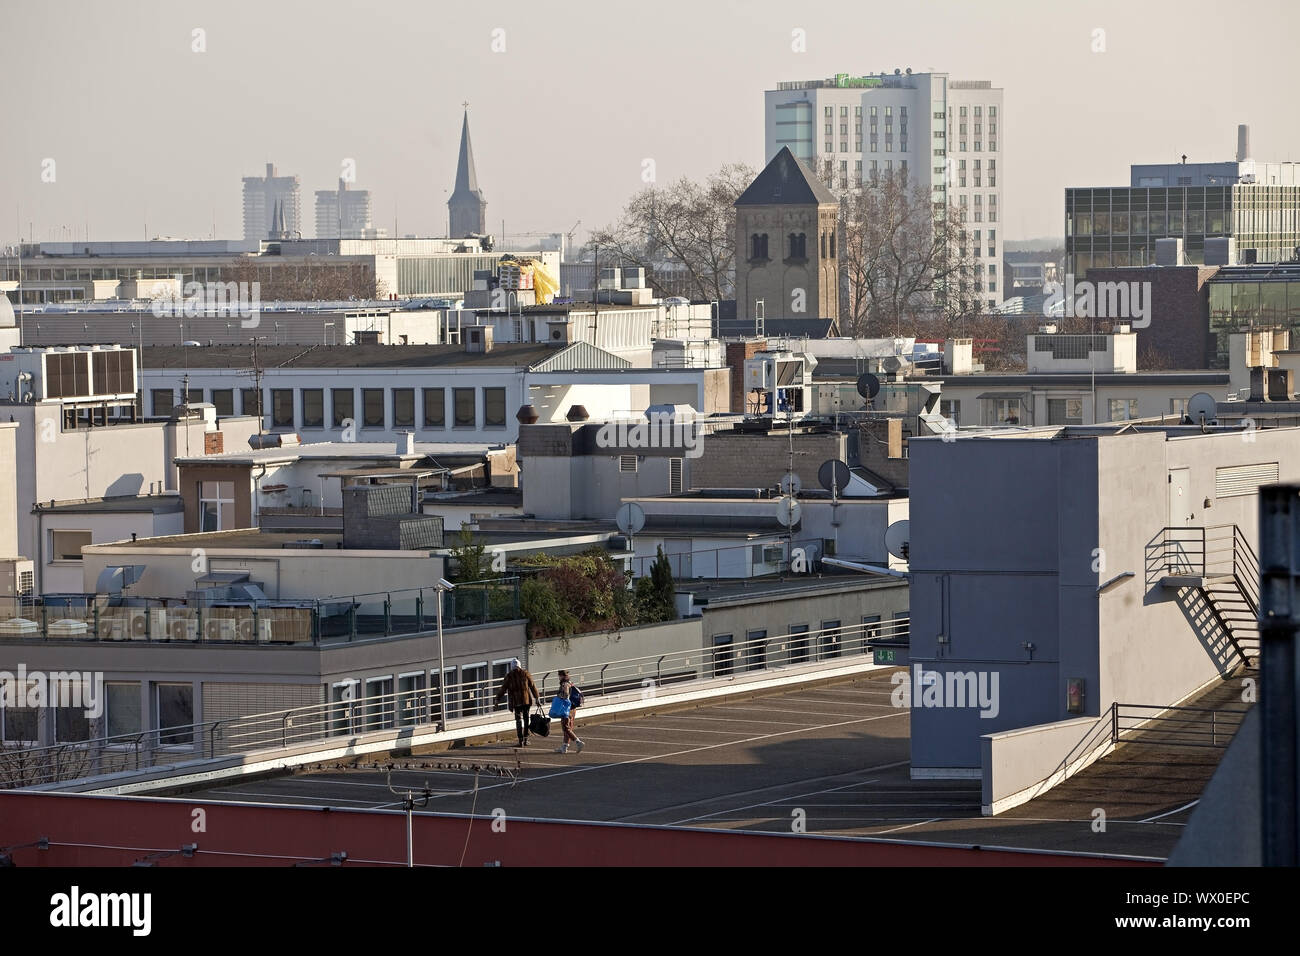 Vue sur les toits de la Glockengasse au niveau de parking, Cologne, Germany, Europe Banque D'Images